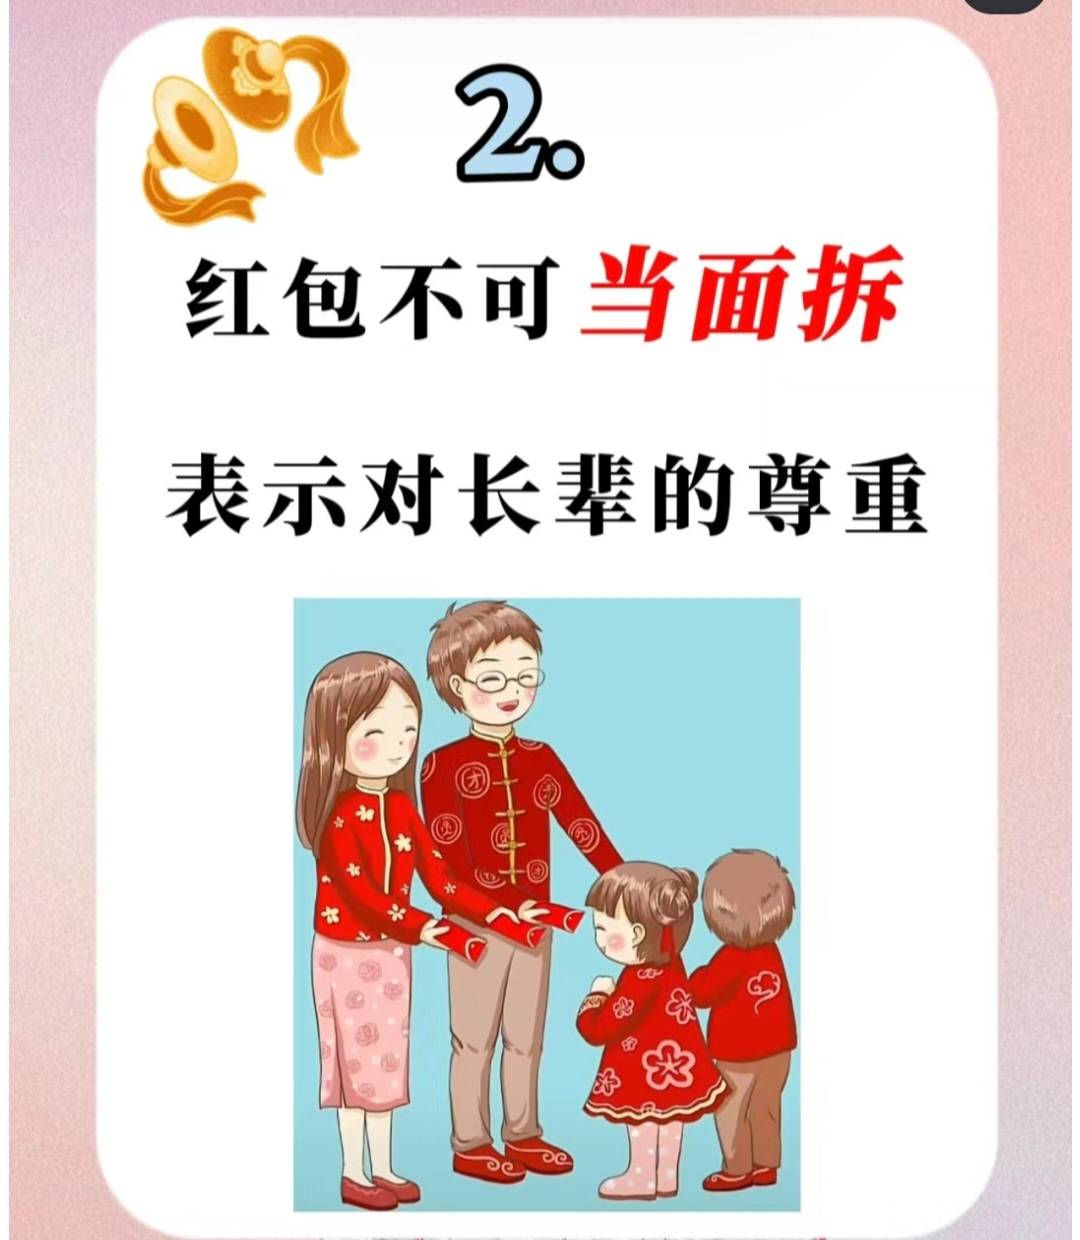 中国红包礼仪图片